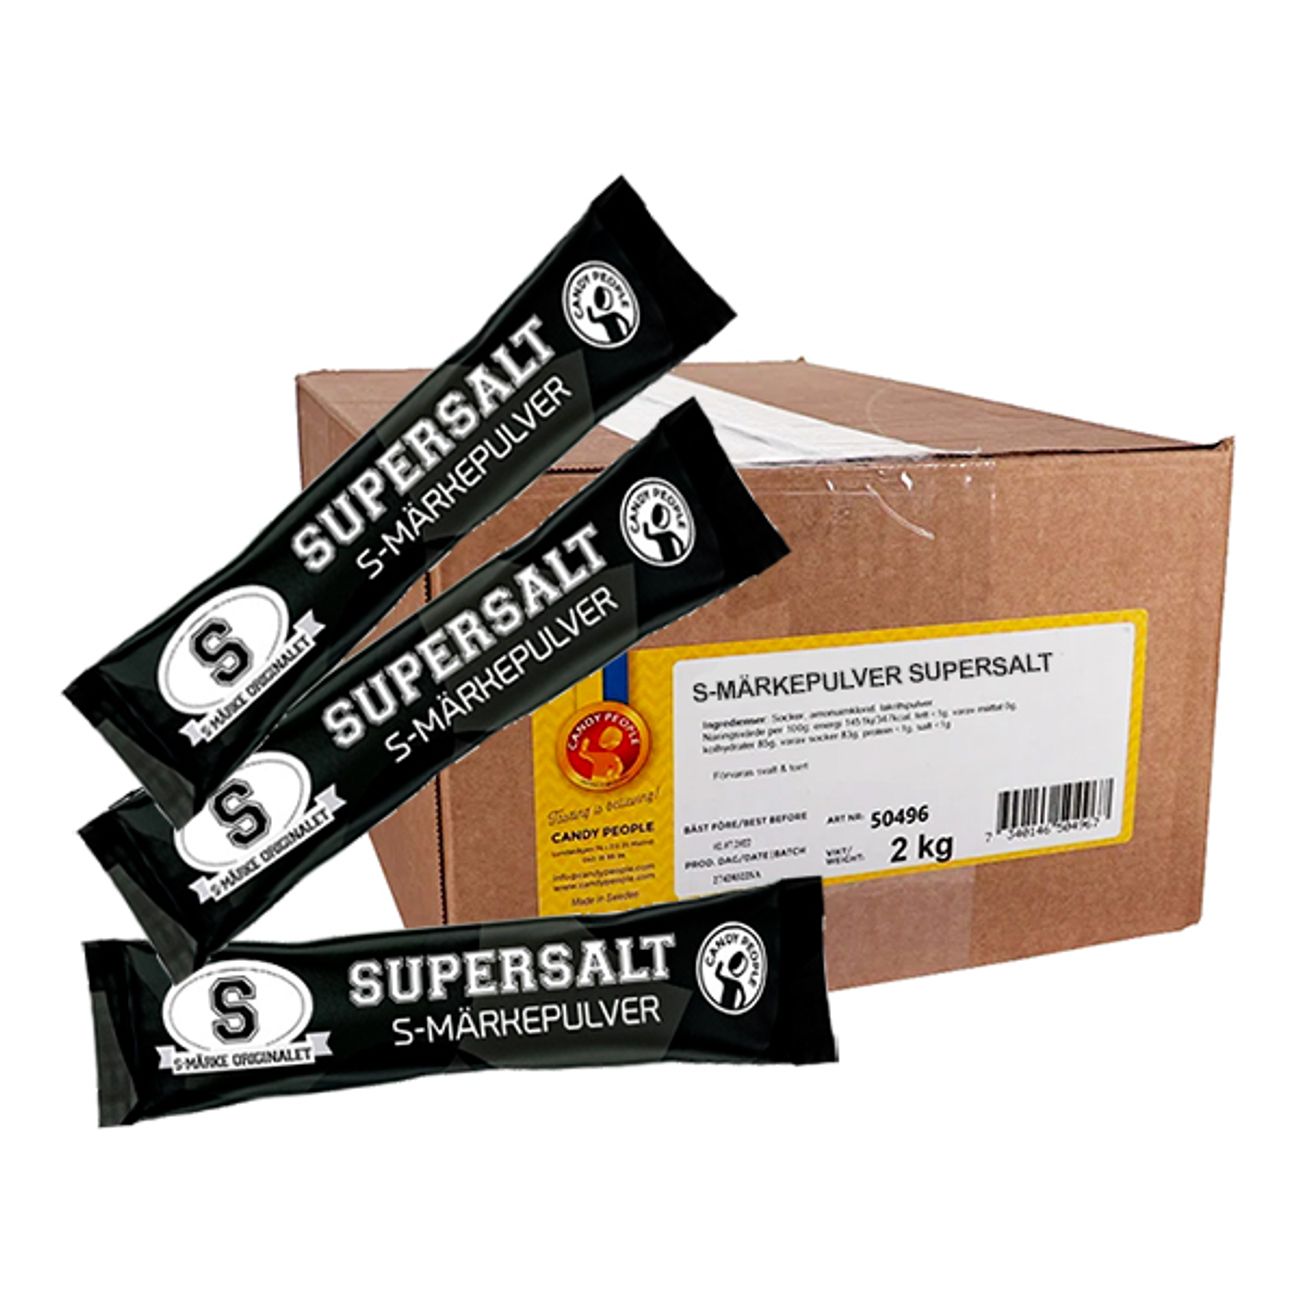 s-markepulver-supersalt-storpack-77655-1